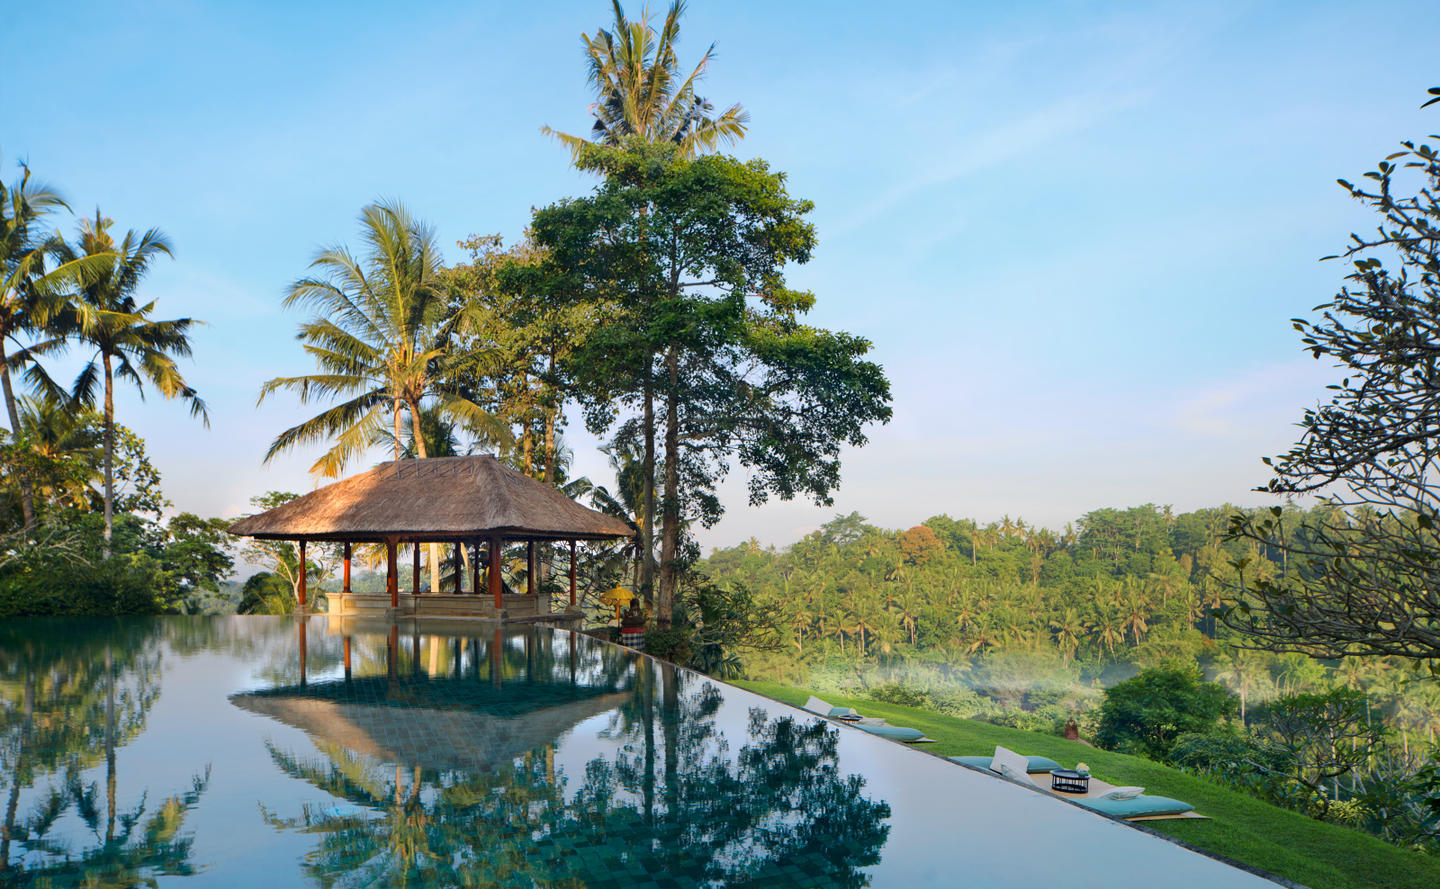 Amandari, Indonesia - Resort Swimming Pool